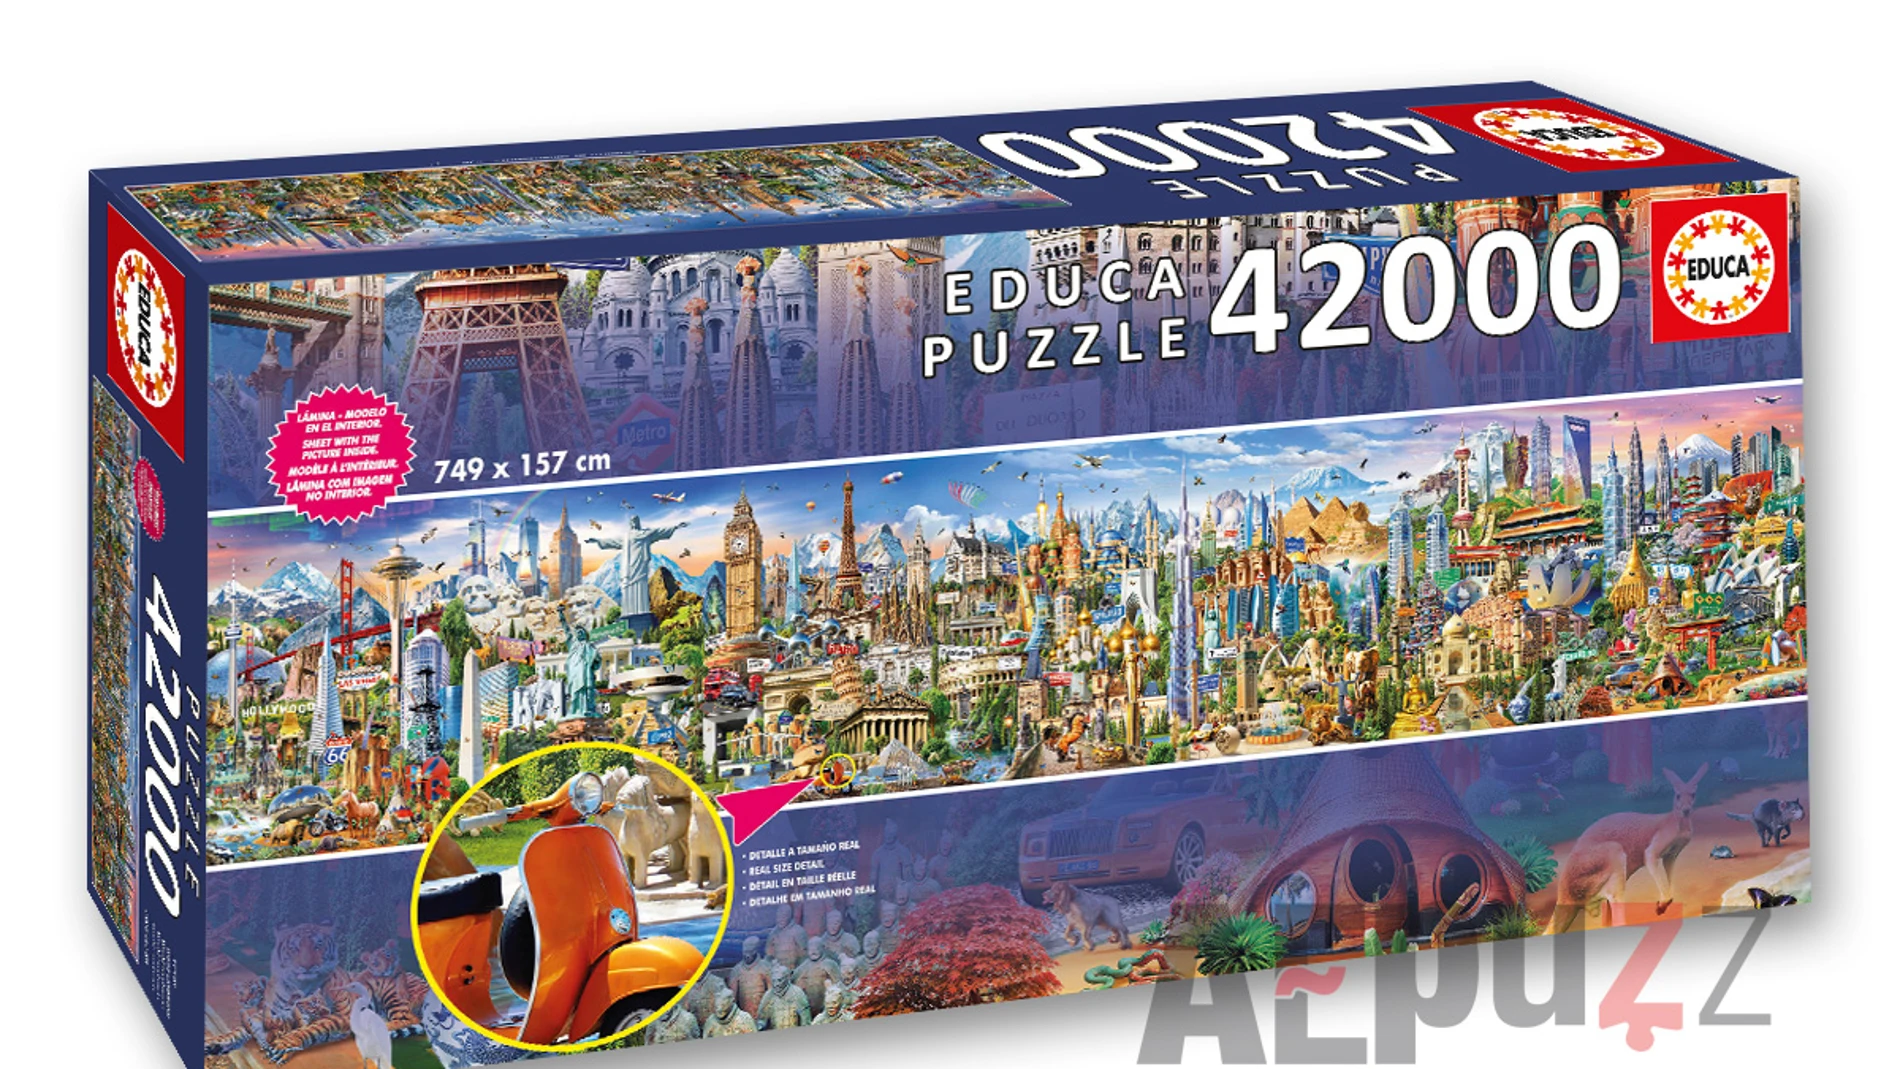 Lanzan el puzzle más grande del mundo con 42.000 piezas y una de 7,49 ​